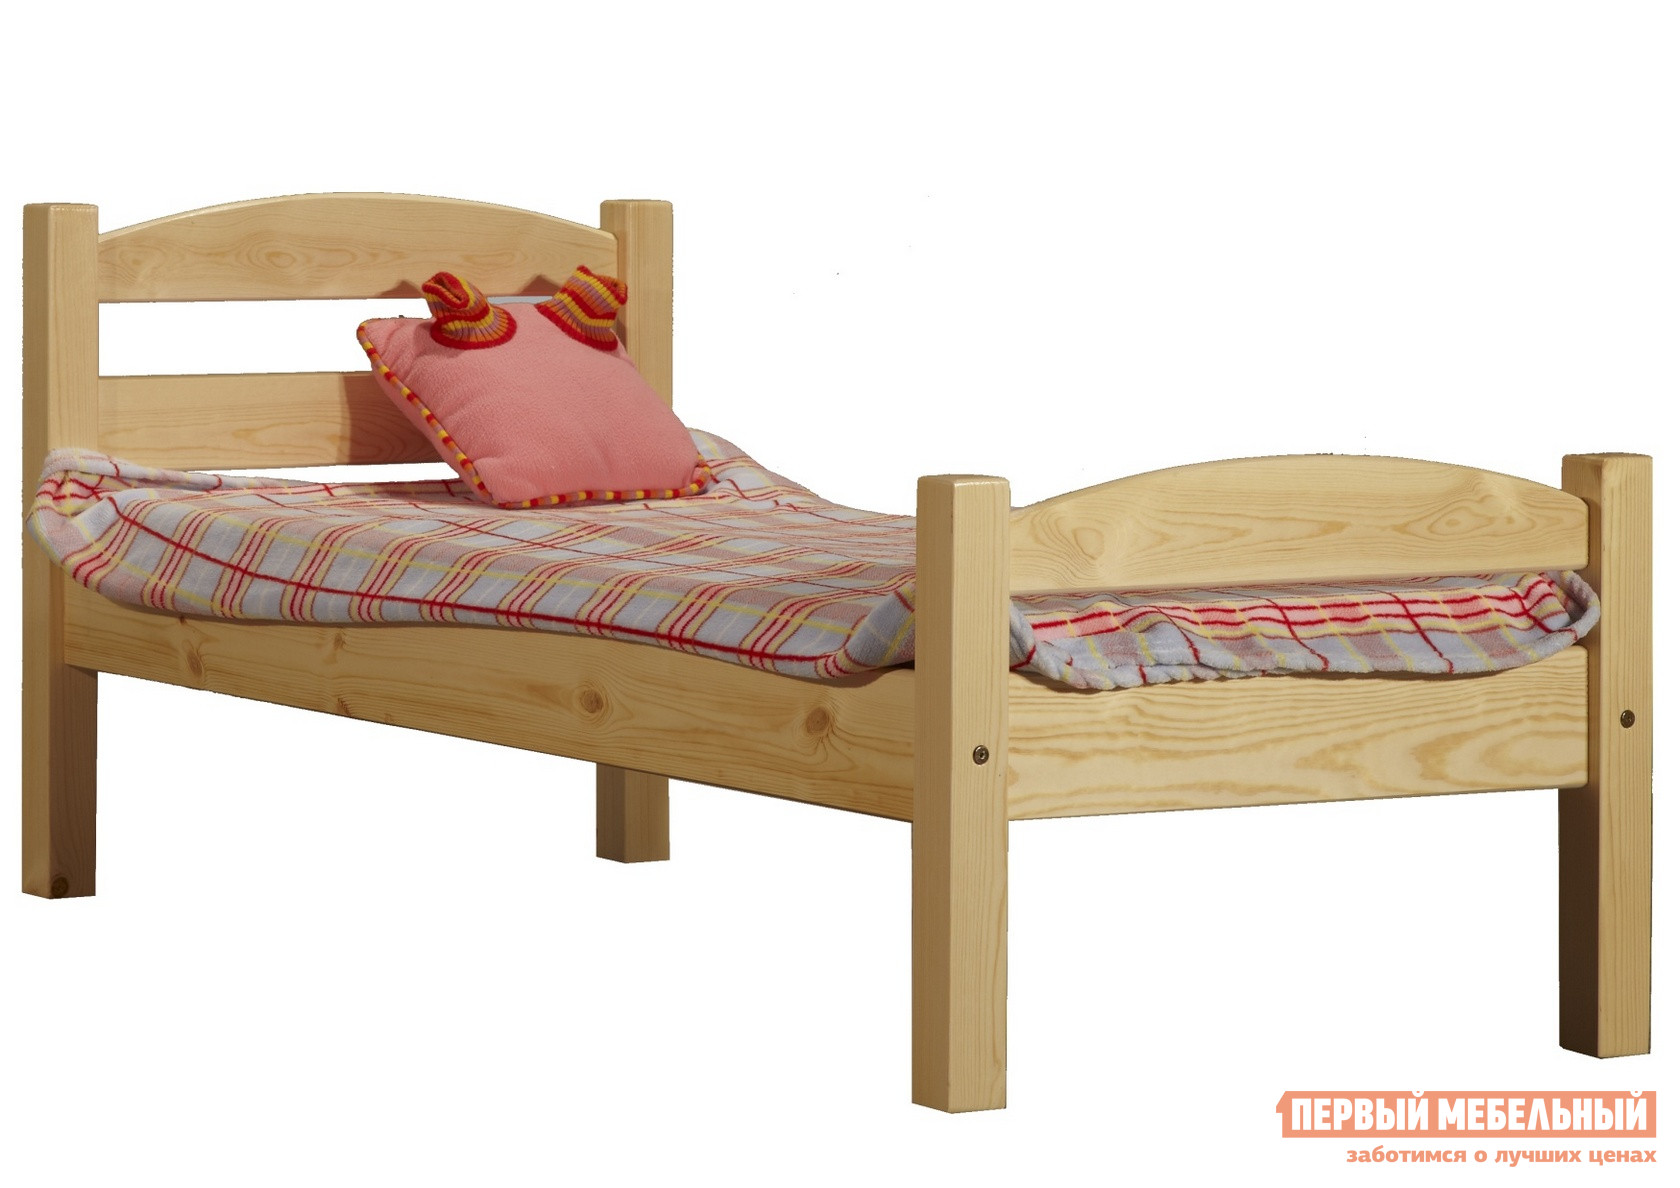 Детская кровать Timberica Кровать Классик детская (спинка дуга)